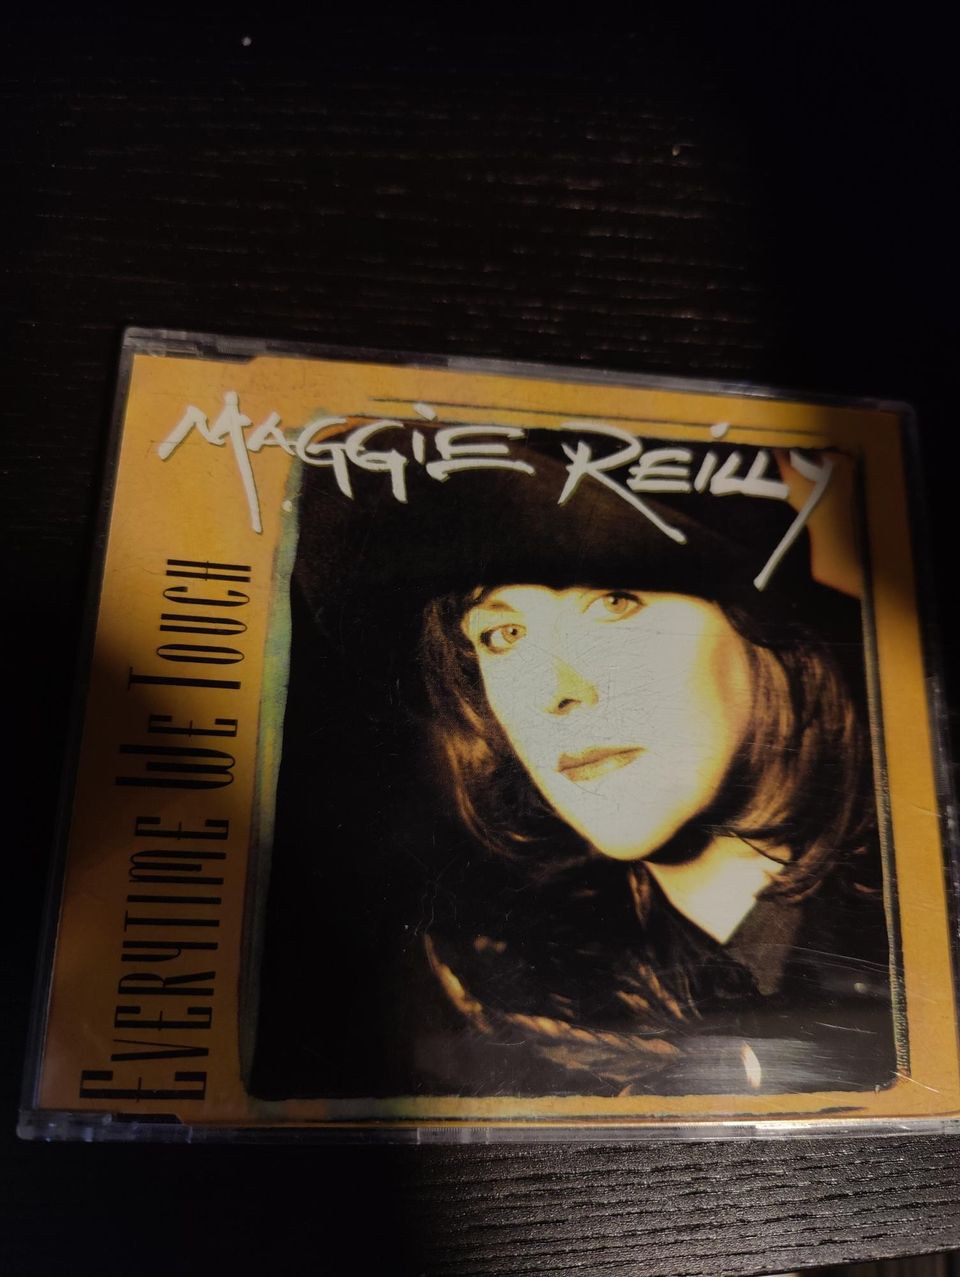 Maggie Reilly cds